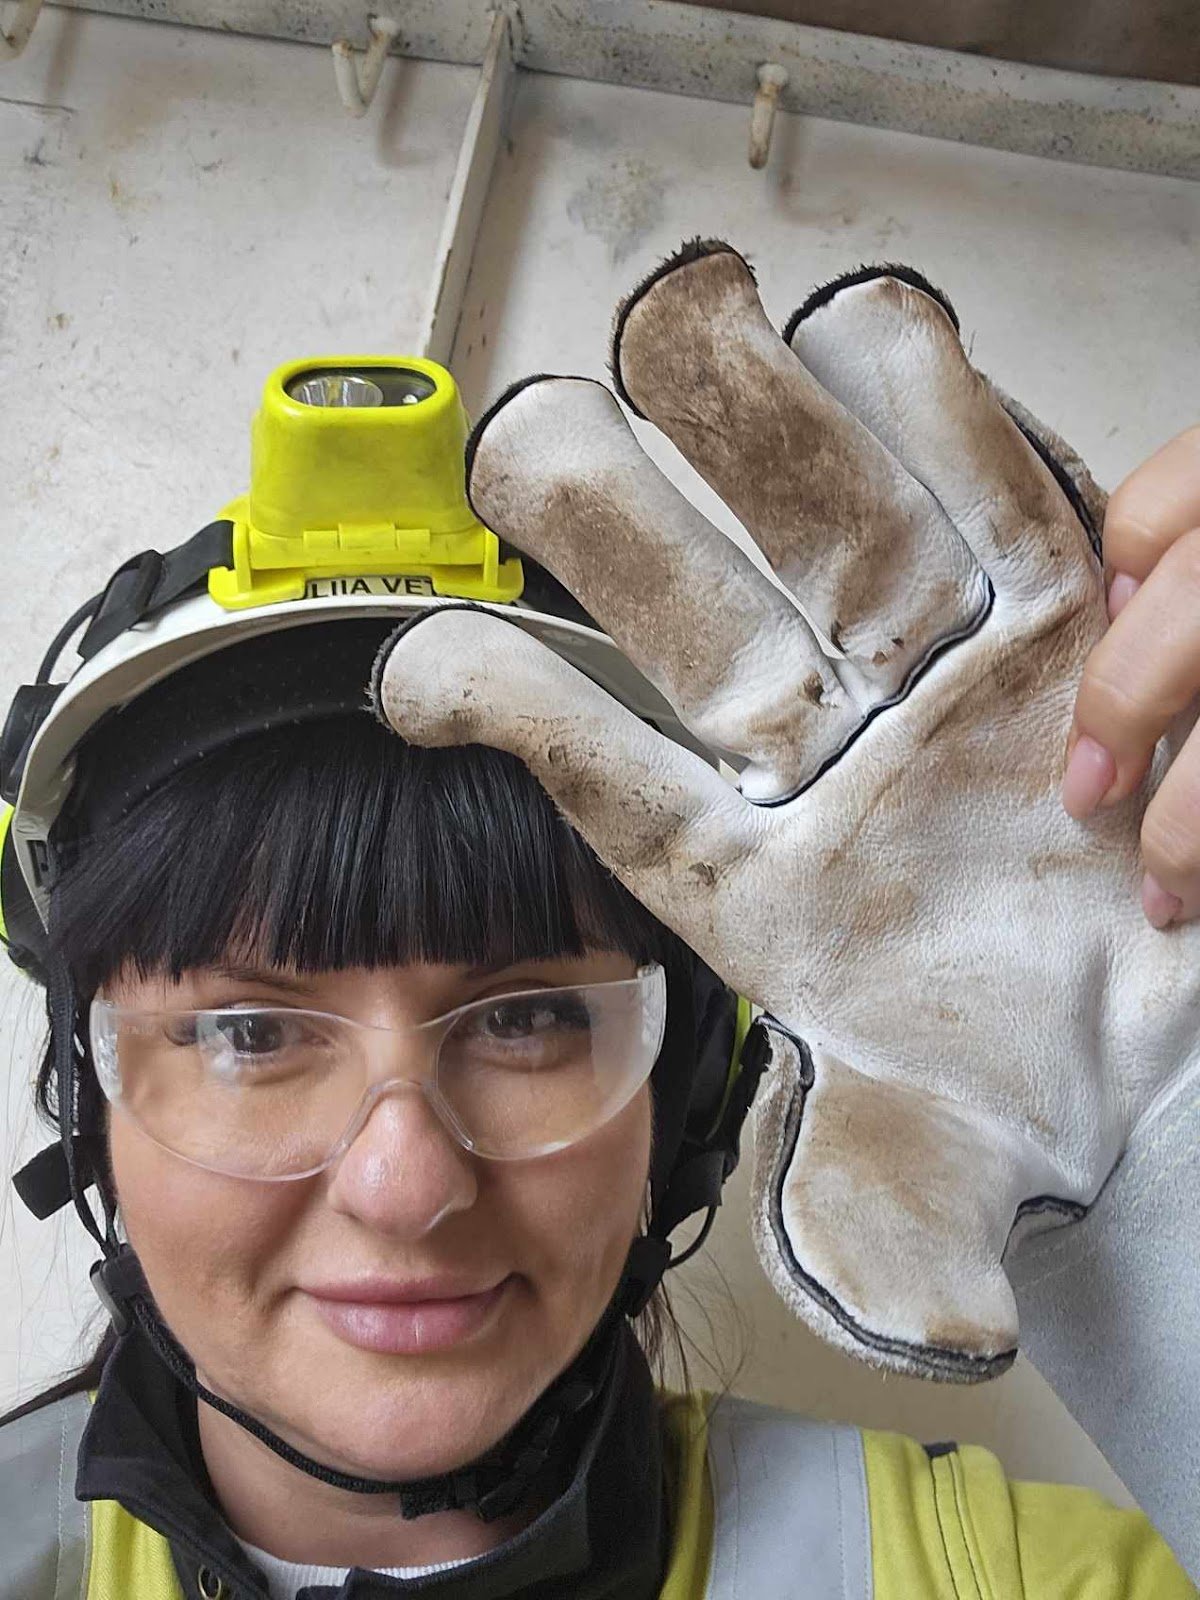 Юлія, вдягнута в форму, каску, захисні окуляри, показує робочі рукавички, які обов’язково треба носити. Фото з особистого архіву